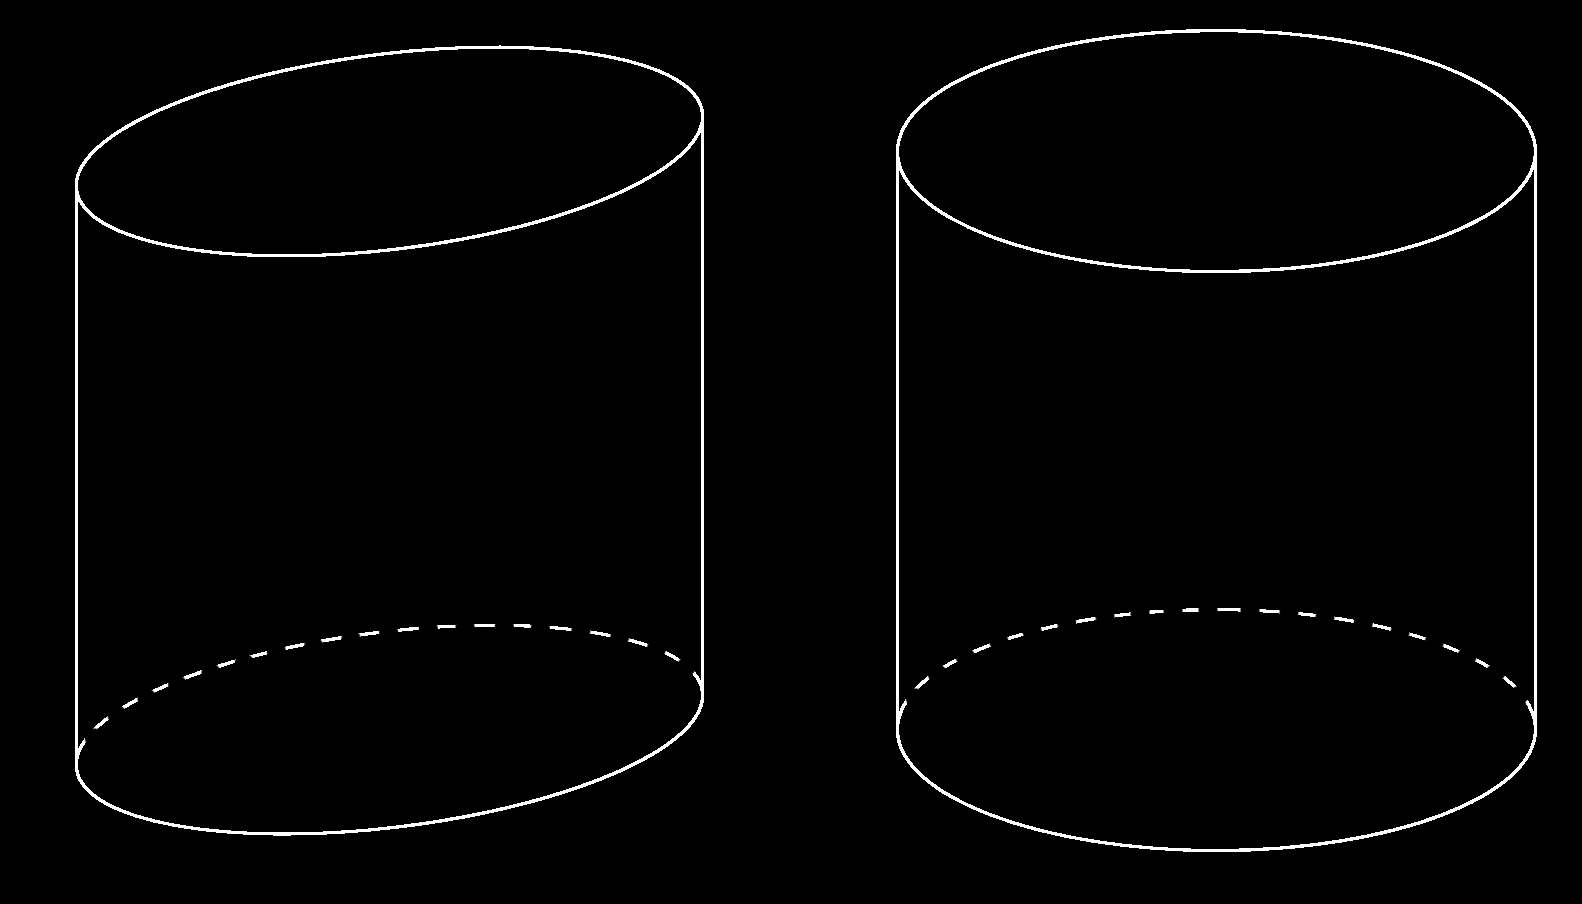 Obrázek 3.2.1: Porovnání válce zobrazeného ve volném rovnob ºném promítání (levý obrázek) a v axonometrii (pravý obrázek).